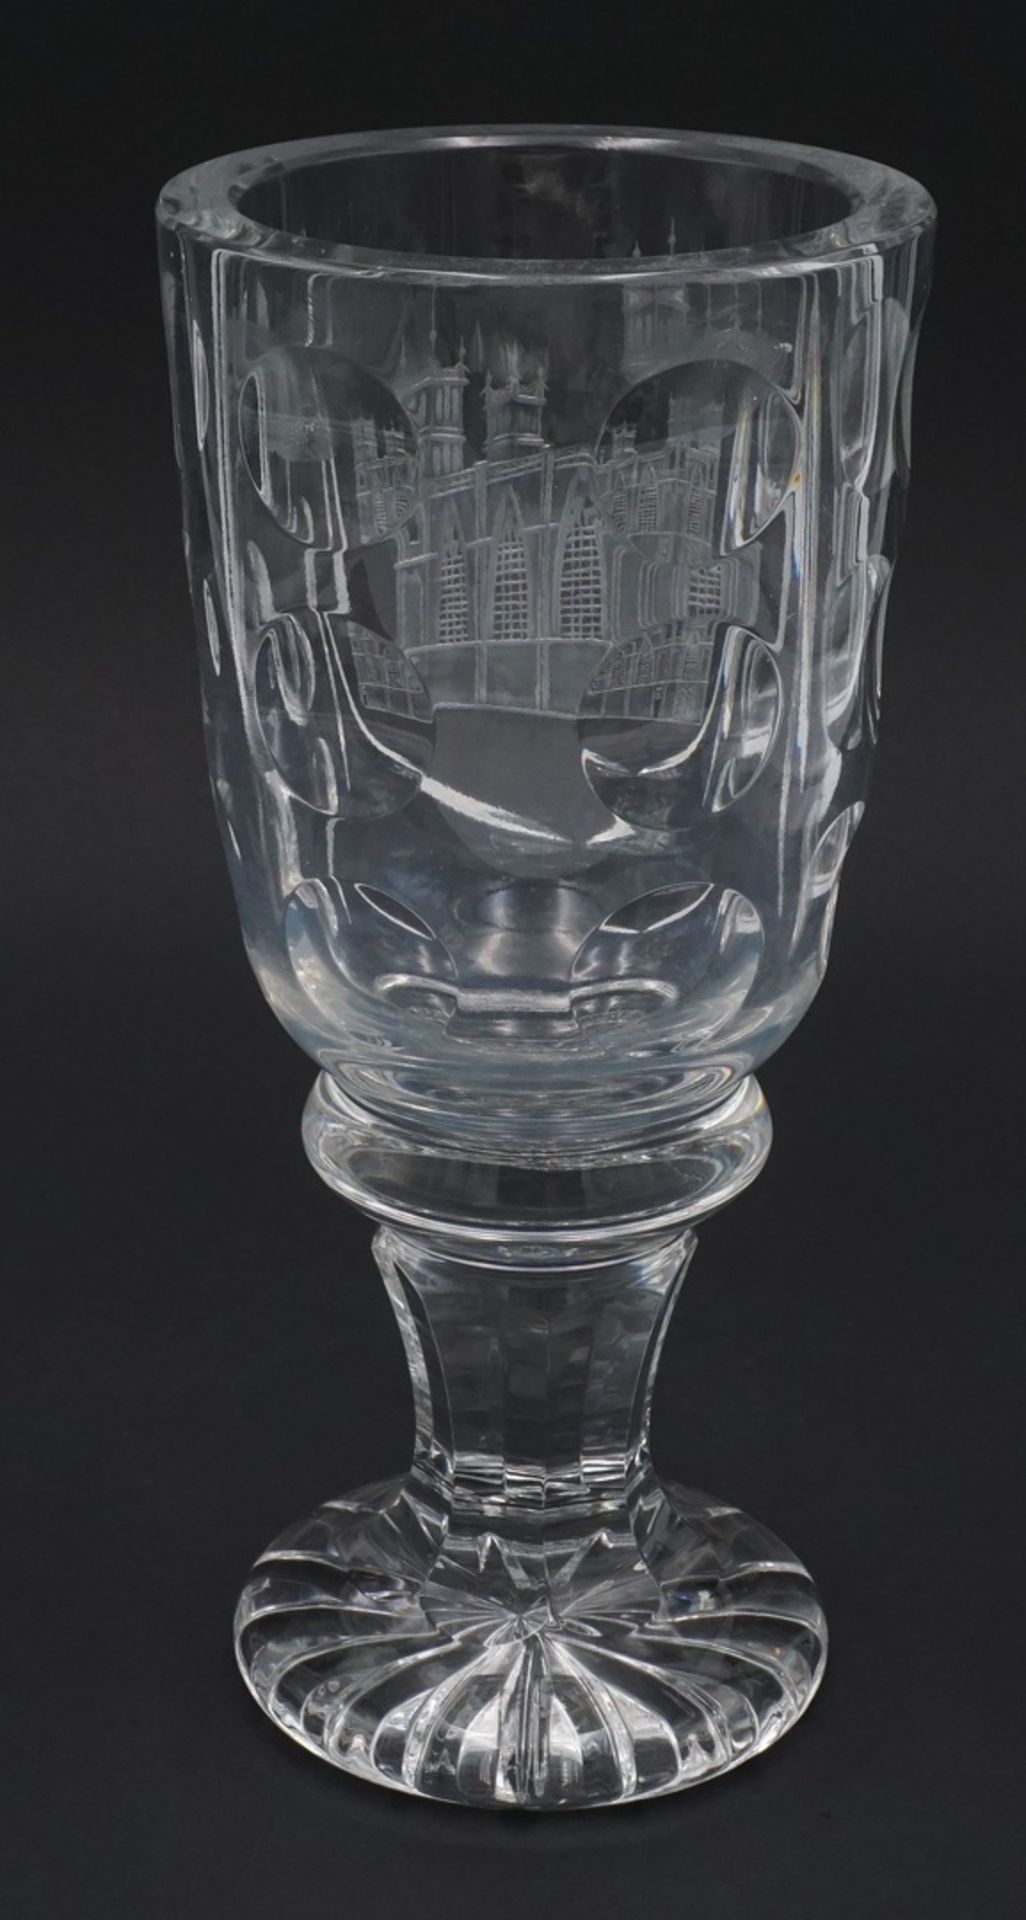 Pokalglas / Andenkenglas mit gravierter Kathedrale, 19/20. Jh.Kristallglas, runder Stand mit - Bild 2 aus 3